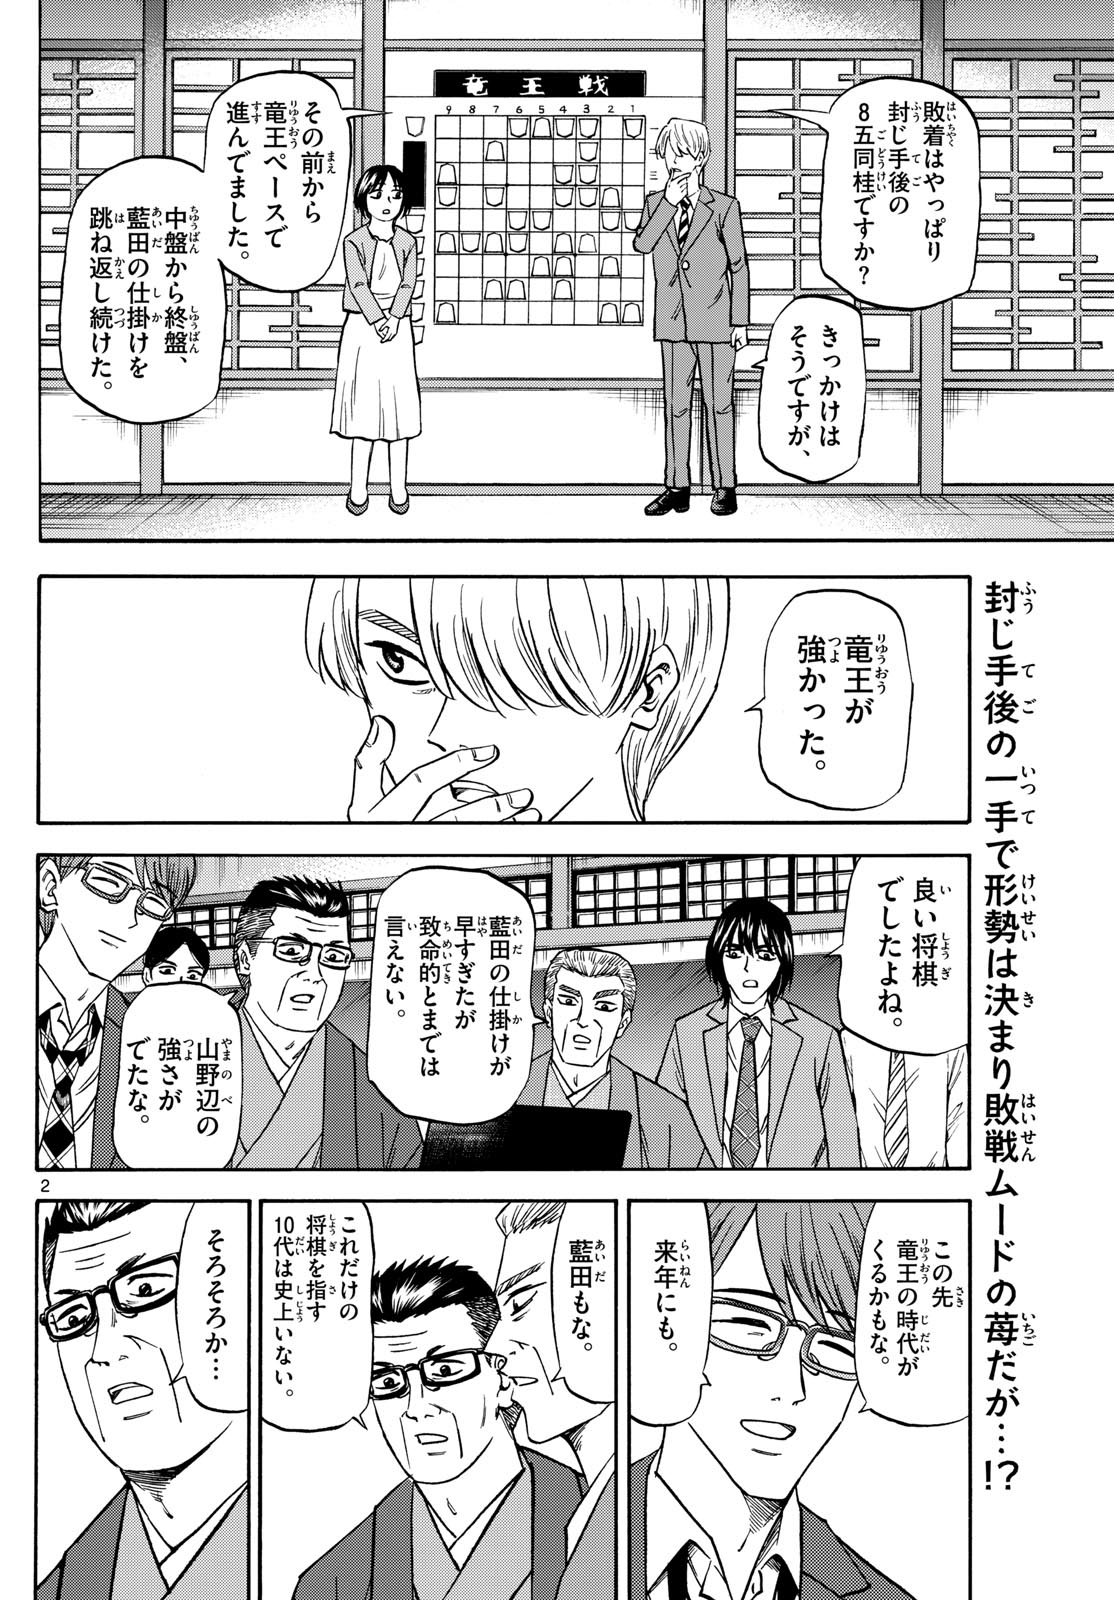 Tatsu to Ichigo - Chapter 178 - Page 2